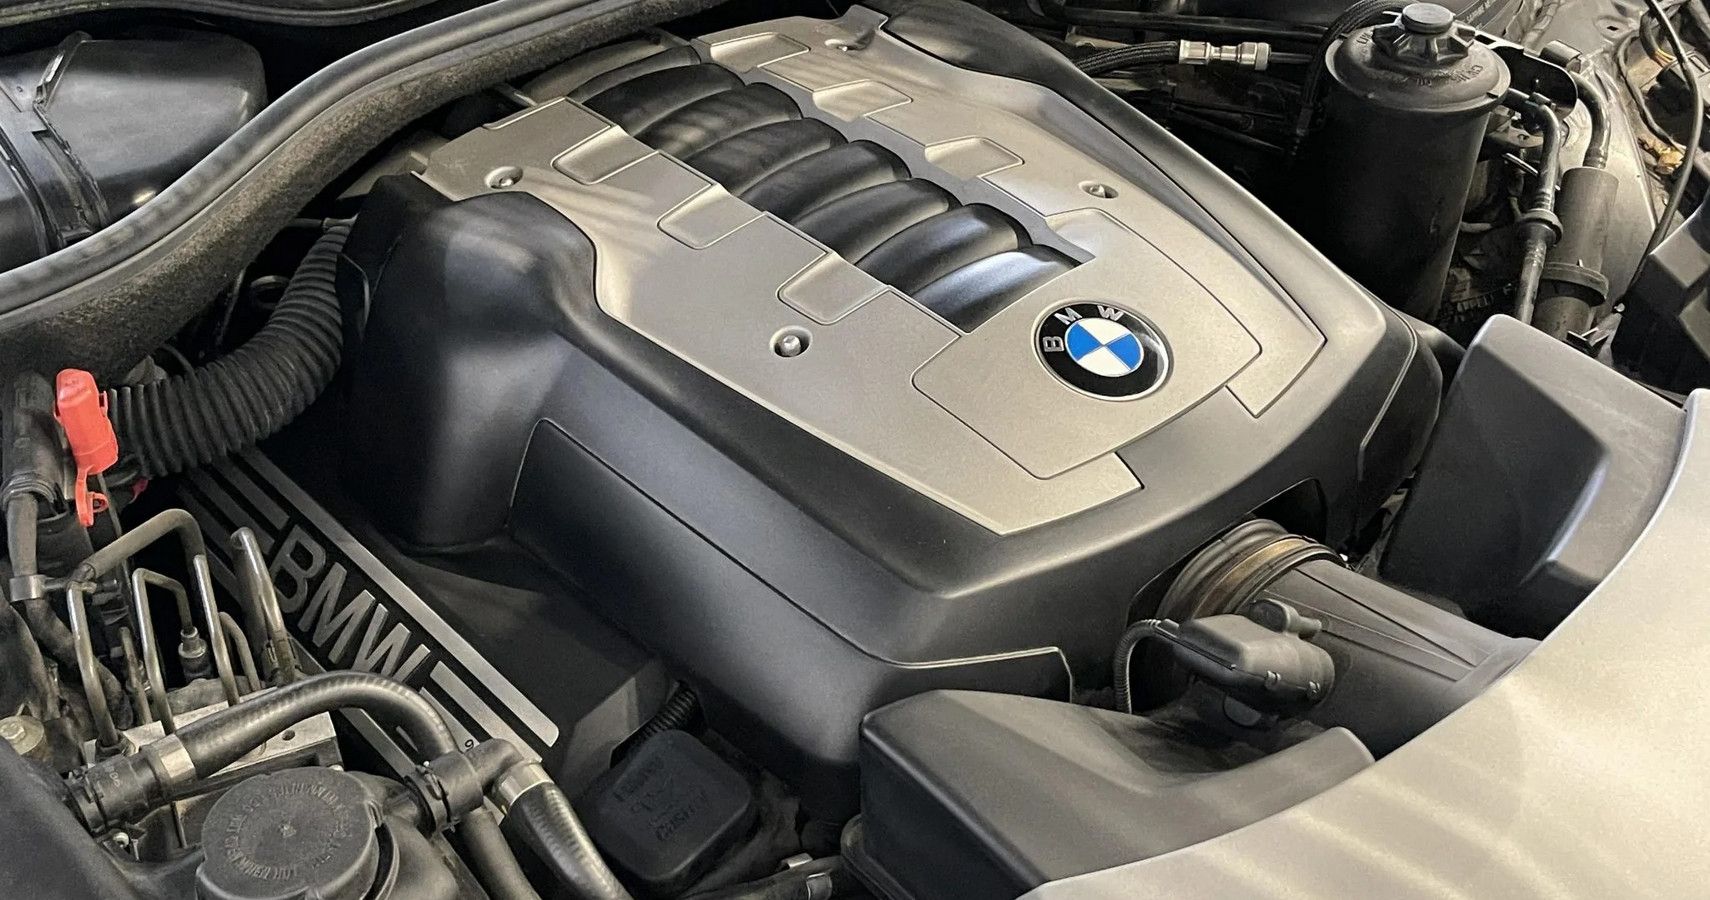 BMW N62 engine